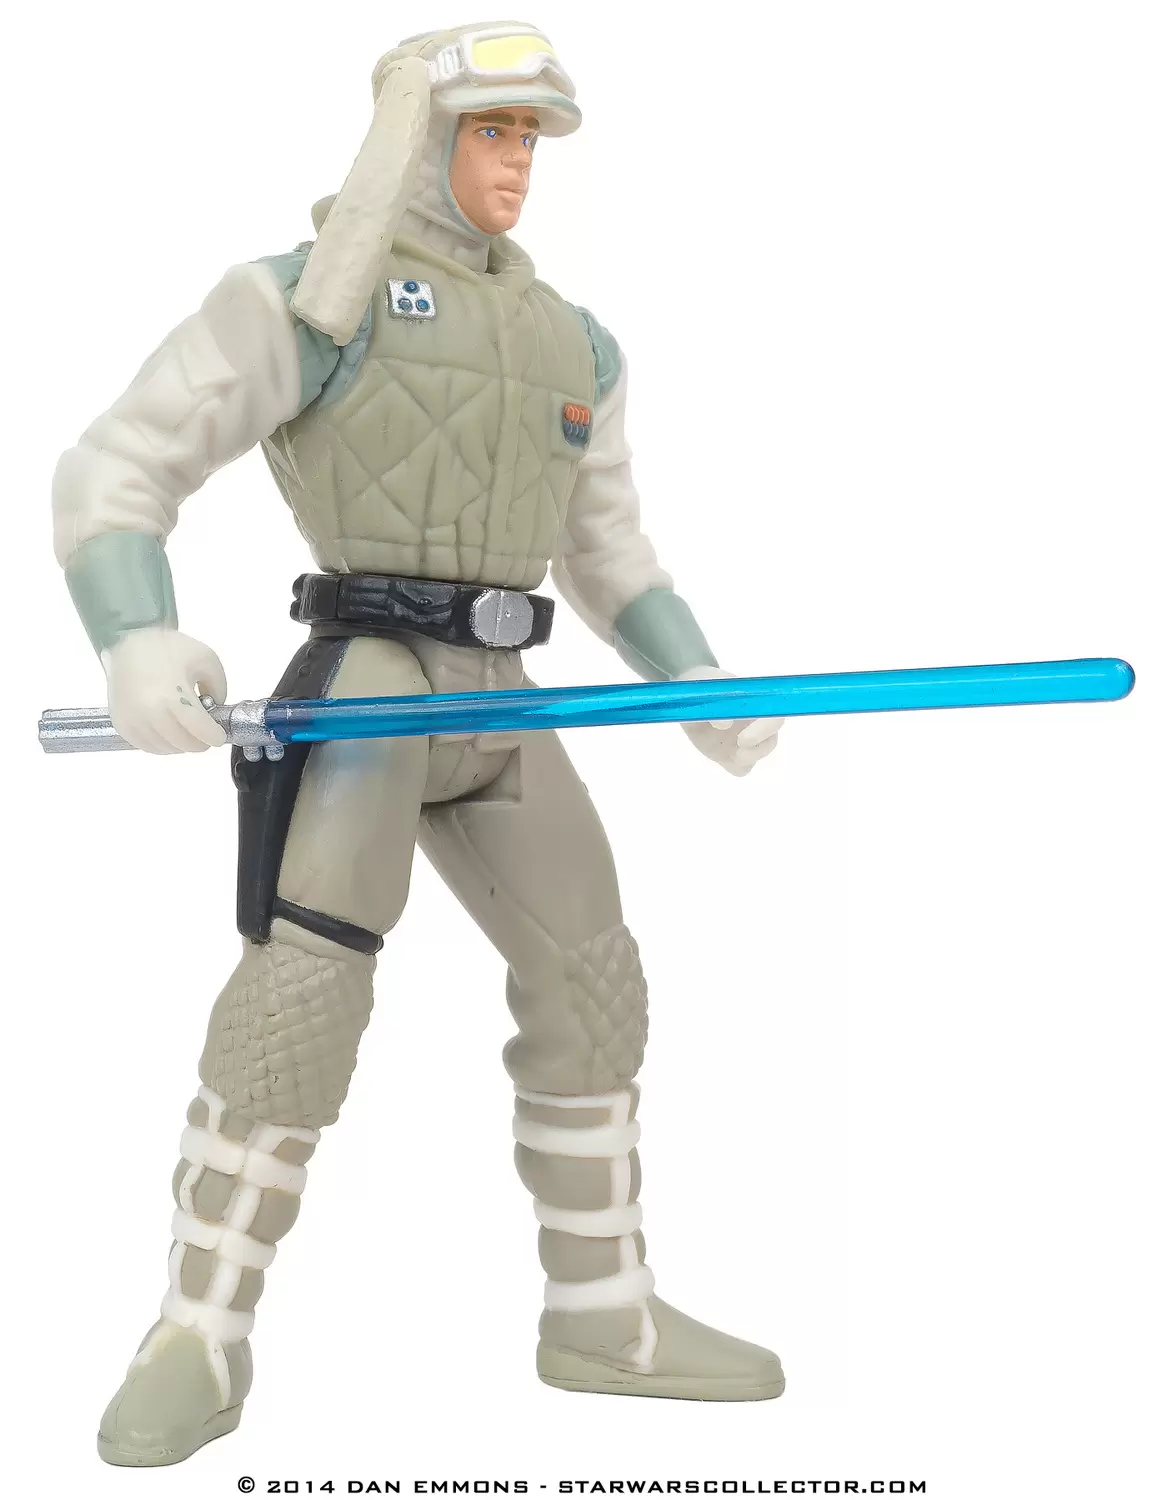 Power of the Force 2 - Luke Skywalker in Hoth Gear